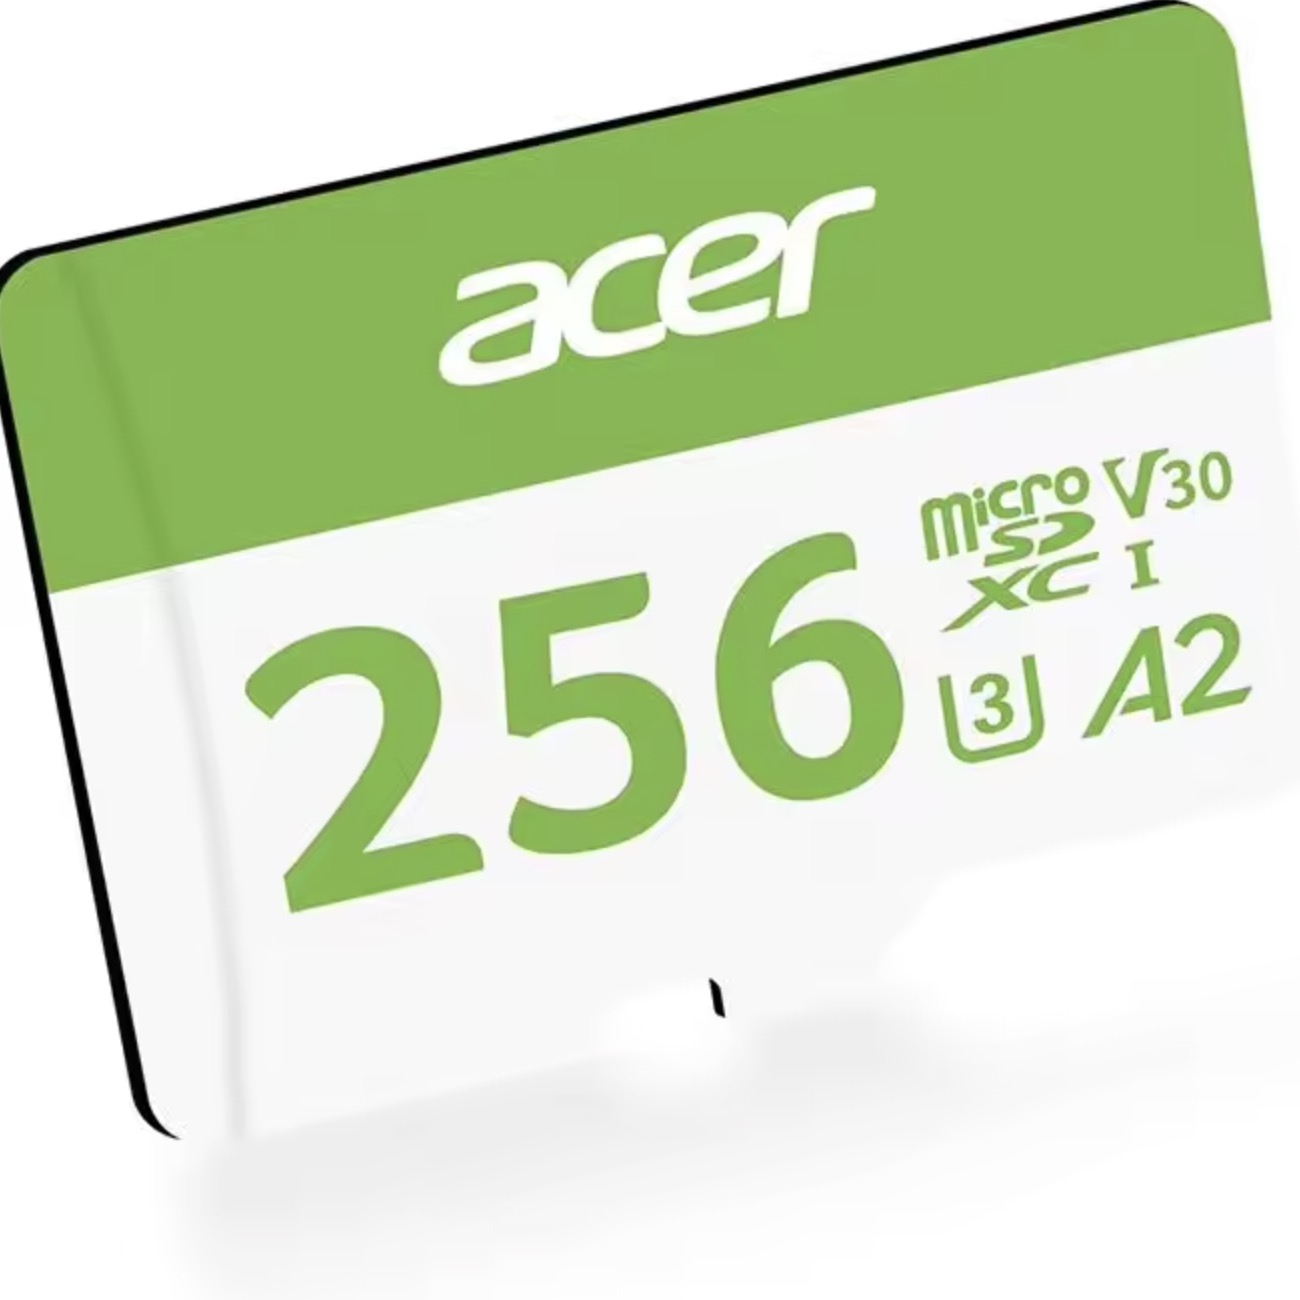 MicroSD Acer MSC300